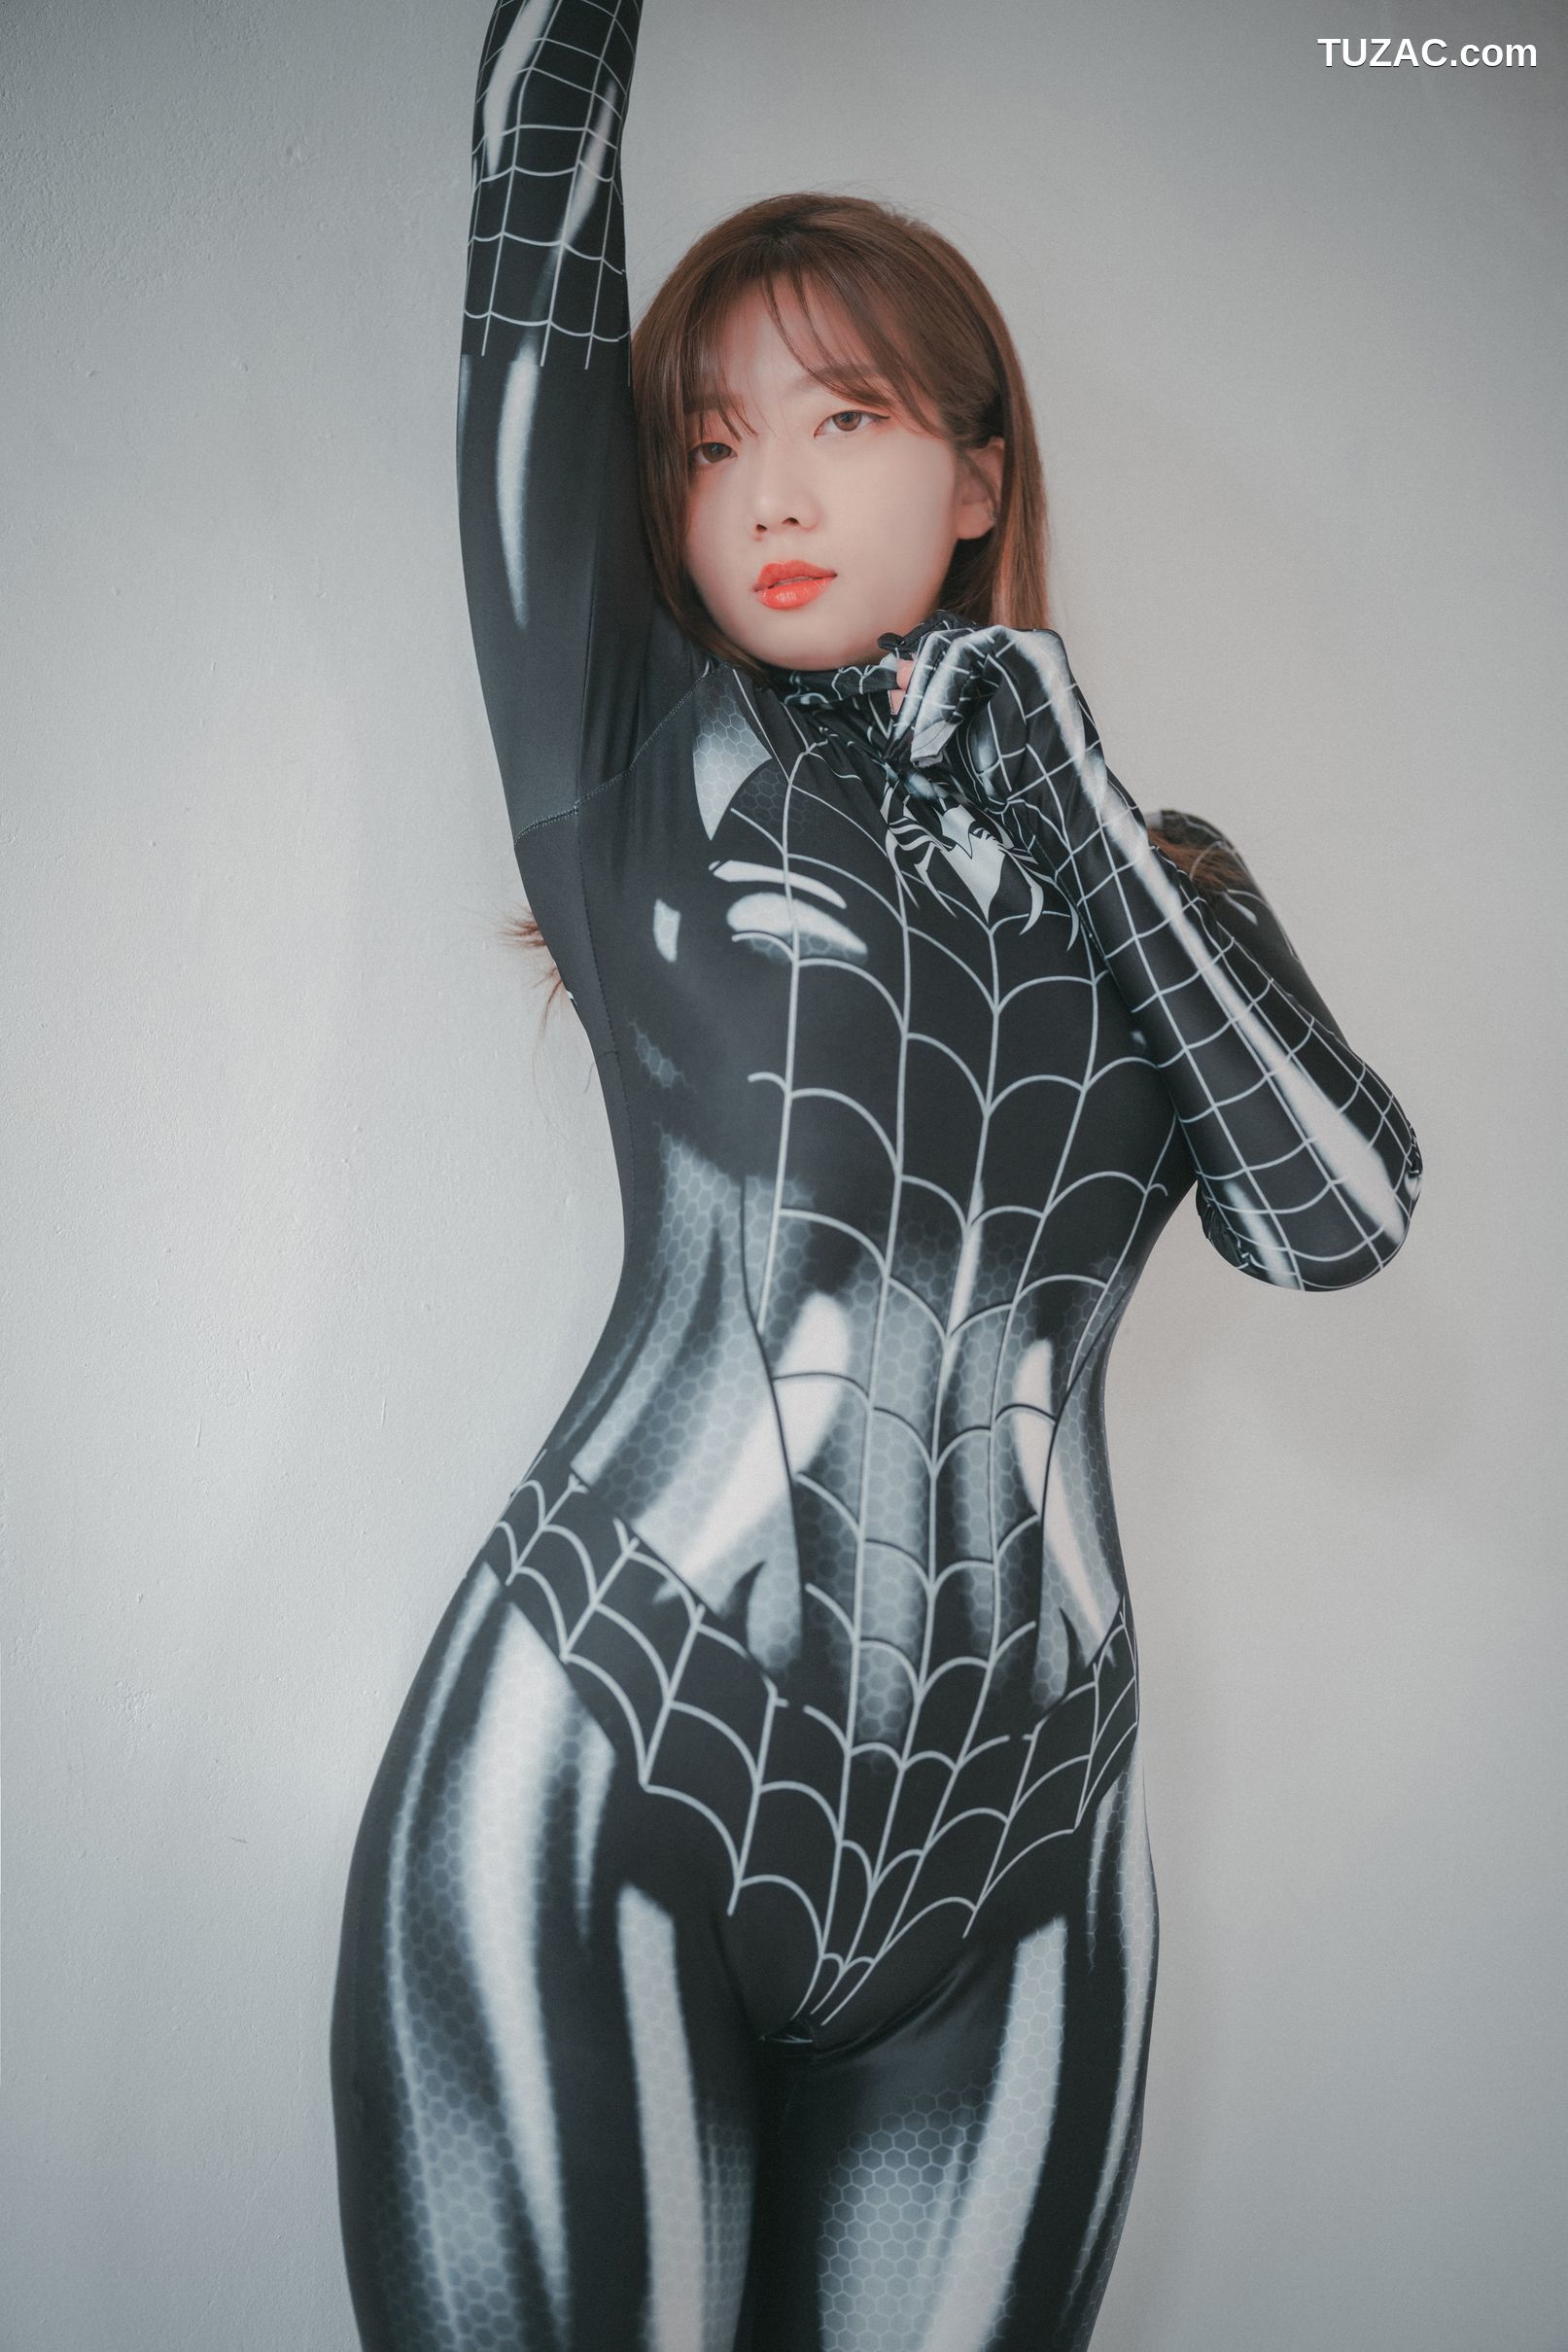 韩国美女-Koby-婀娜的蜘蛛女郎-The-Curvy-Spider-Girl-DJAWA